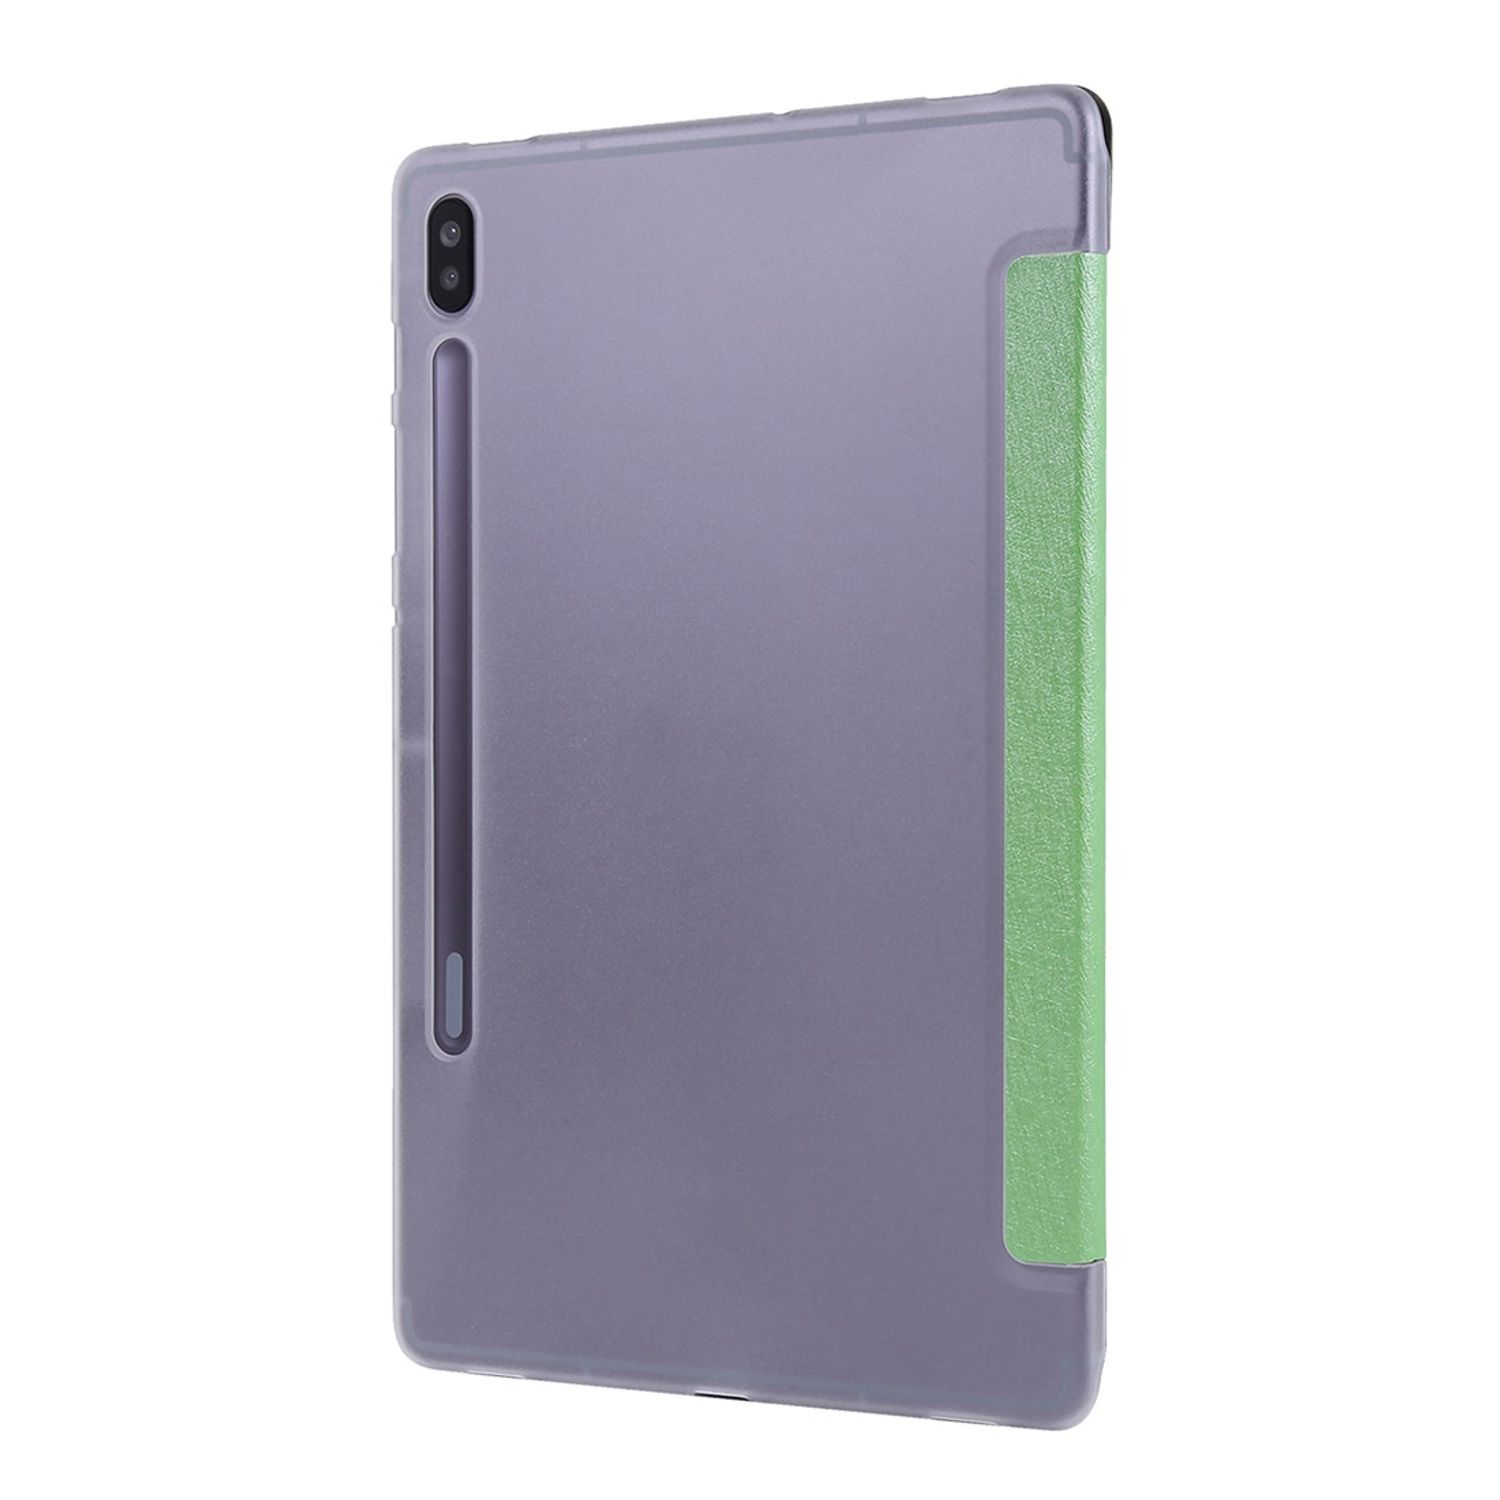 KÖNIG DESIGN Tablet-Hülle Samsung für Kunstleder, Tablet-Hülle Grün Bookcover